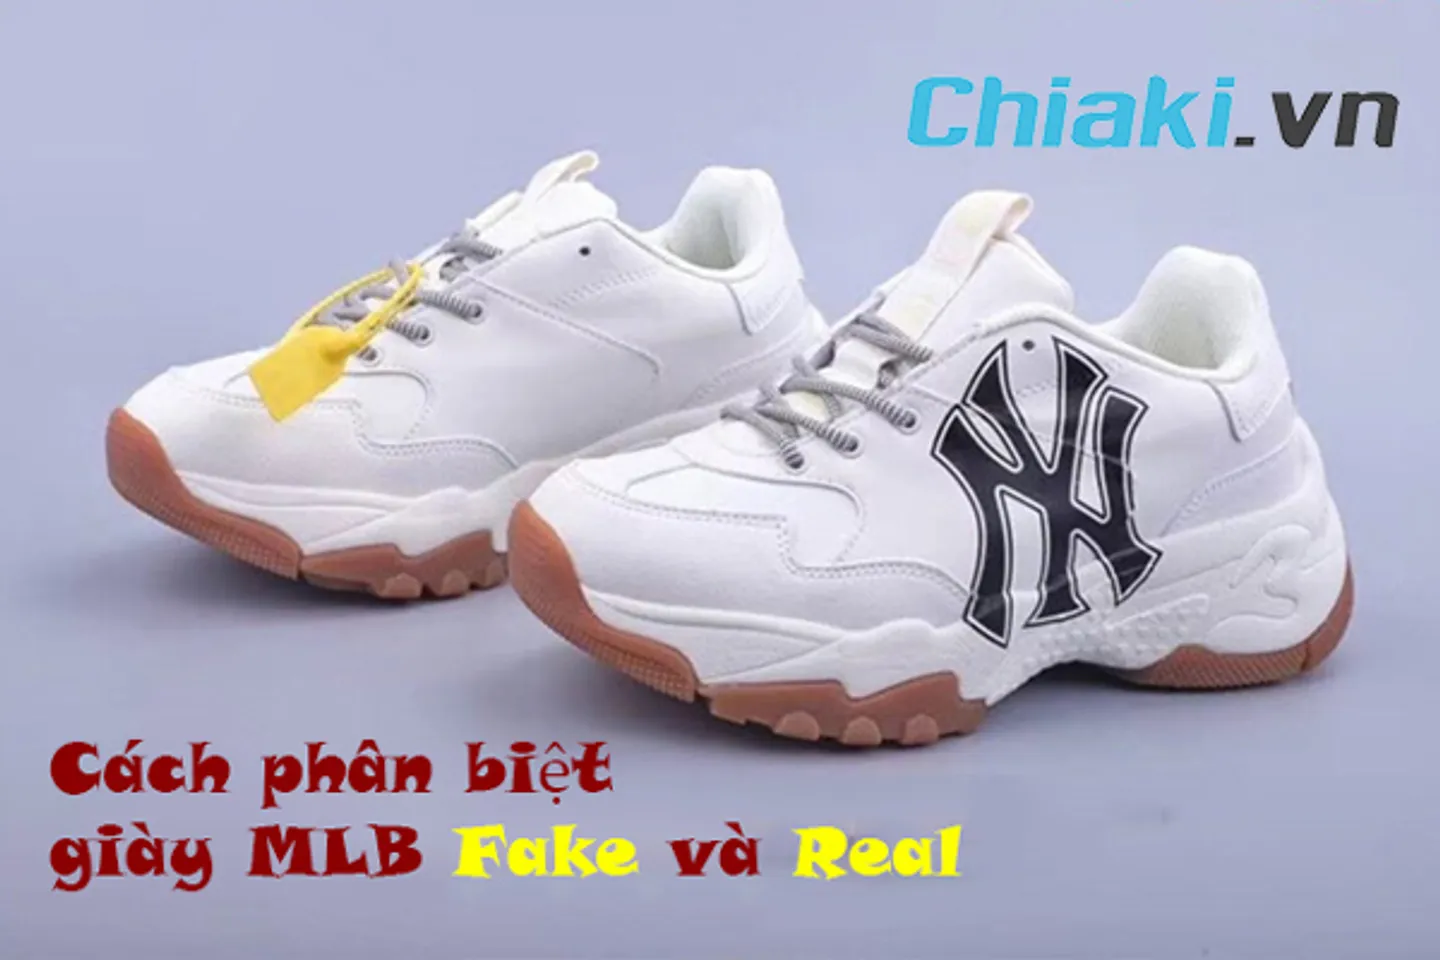 Giày MLB chính hãng MLB authentic logo boston độn đế cao 57cm dễ phối đồ  check ra FAKE hoàn tiền X3  Shopee Việt Nam